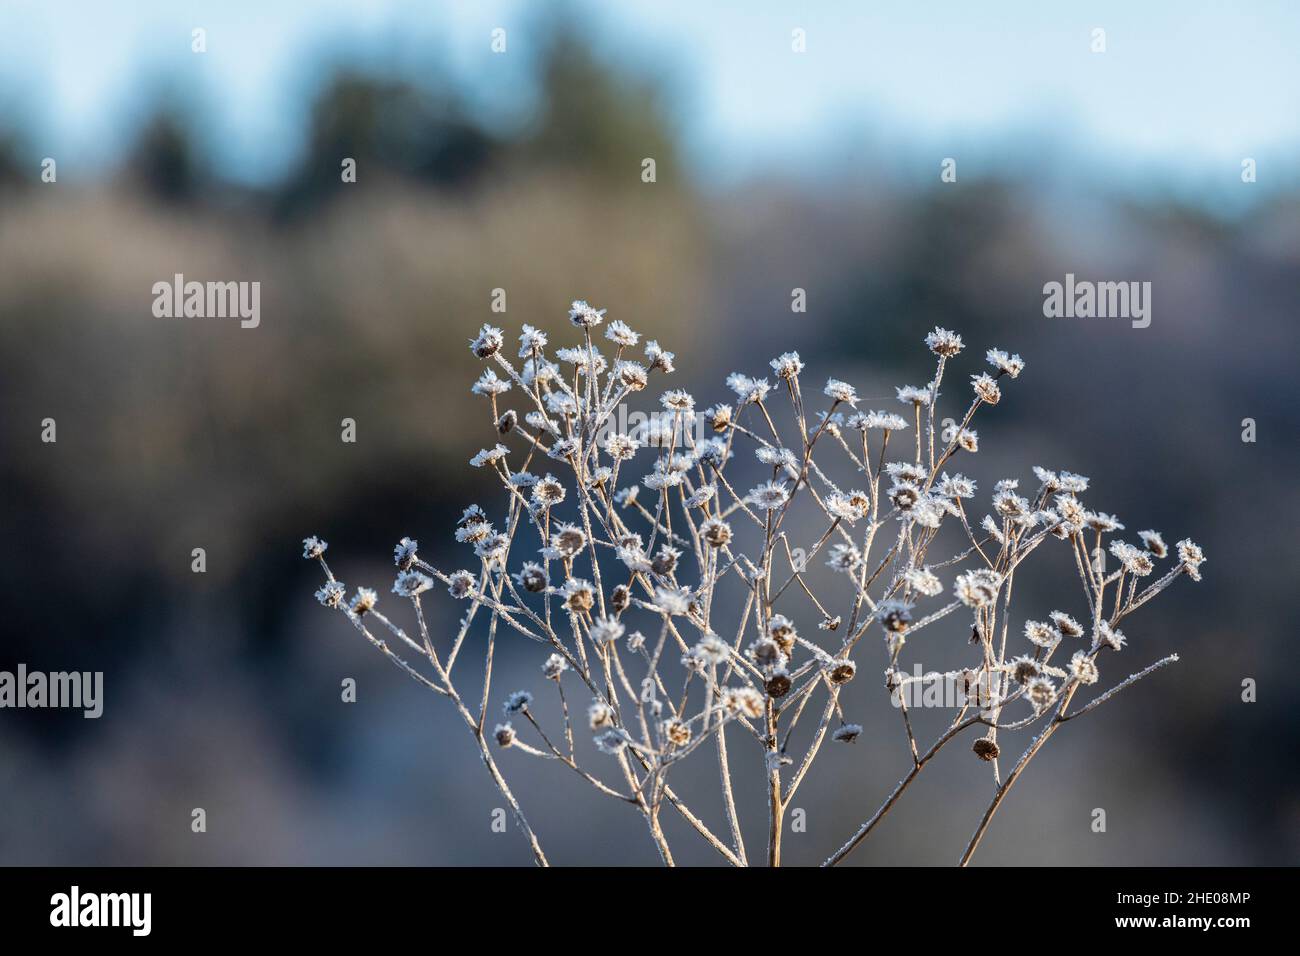 Frozen over shrub, near Garstedt, Lower Saxony, Germany Stock Photo